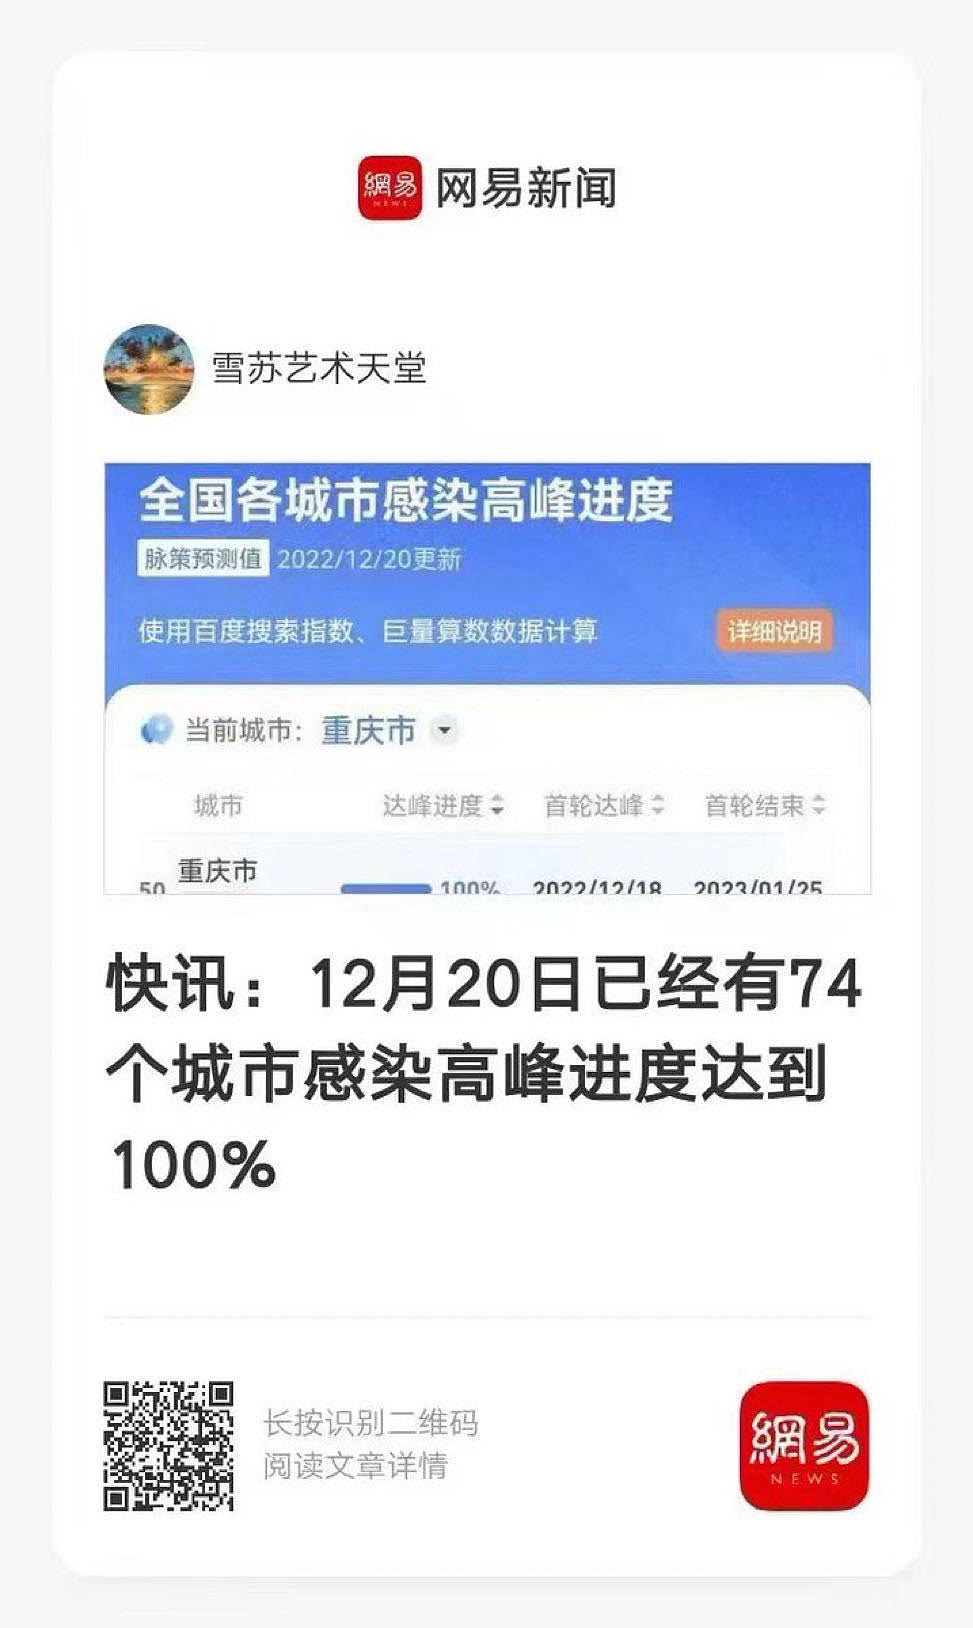 截至12月20日，中国各城市统计显示，74个城市感染高峰进度达100%。（网易截图/古亭提供）